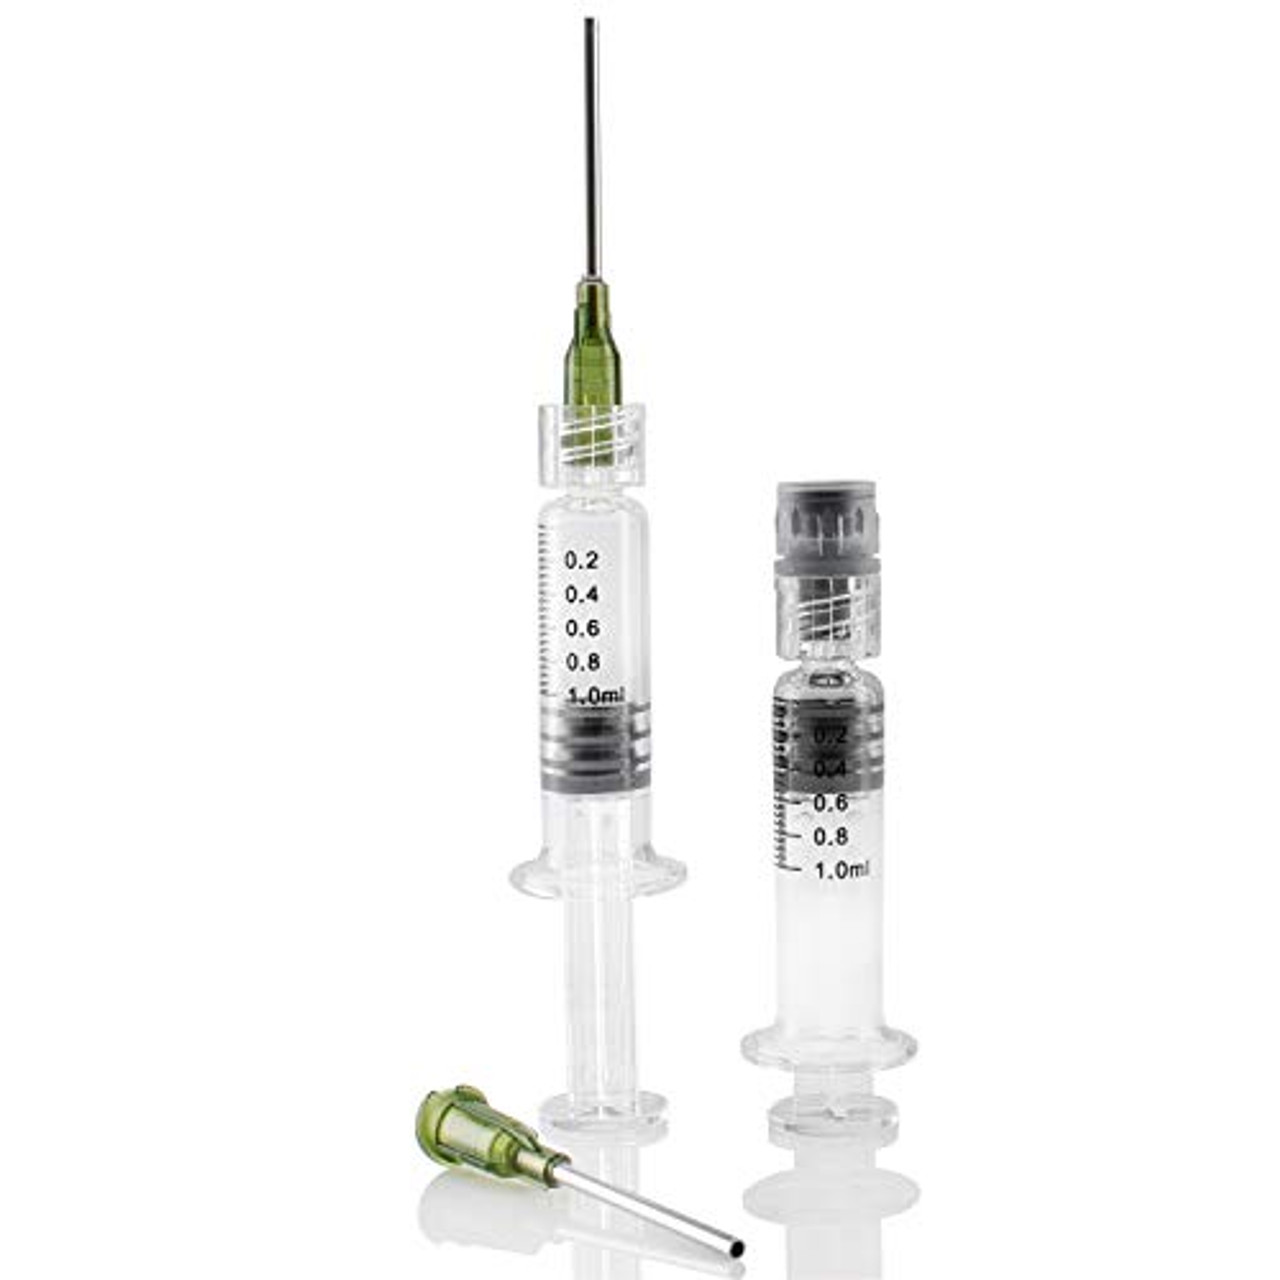 Glue Syringe for woodworking, 3ml Blunt Tip Injection Syringes